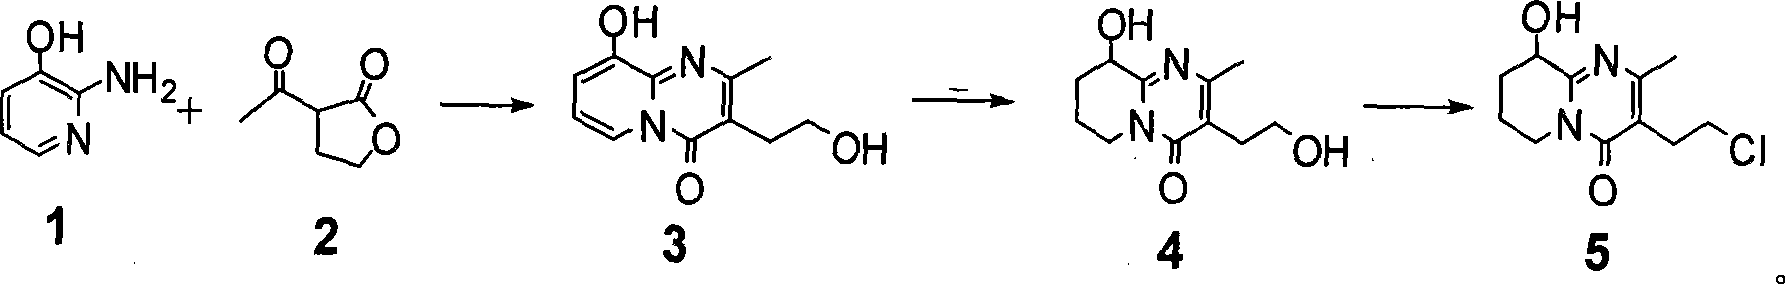 Process for synthesizing paliperidone intermediate